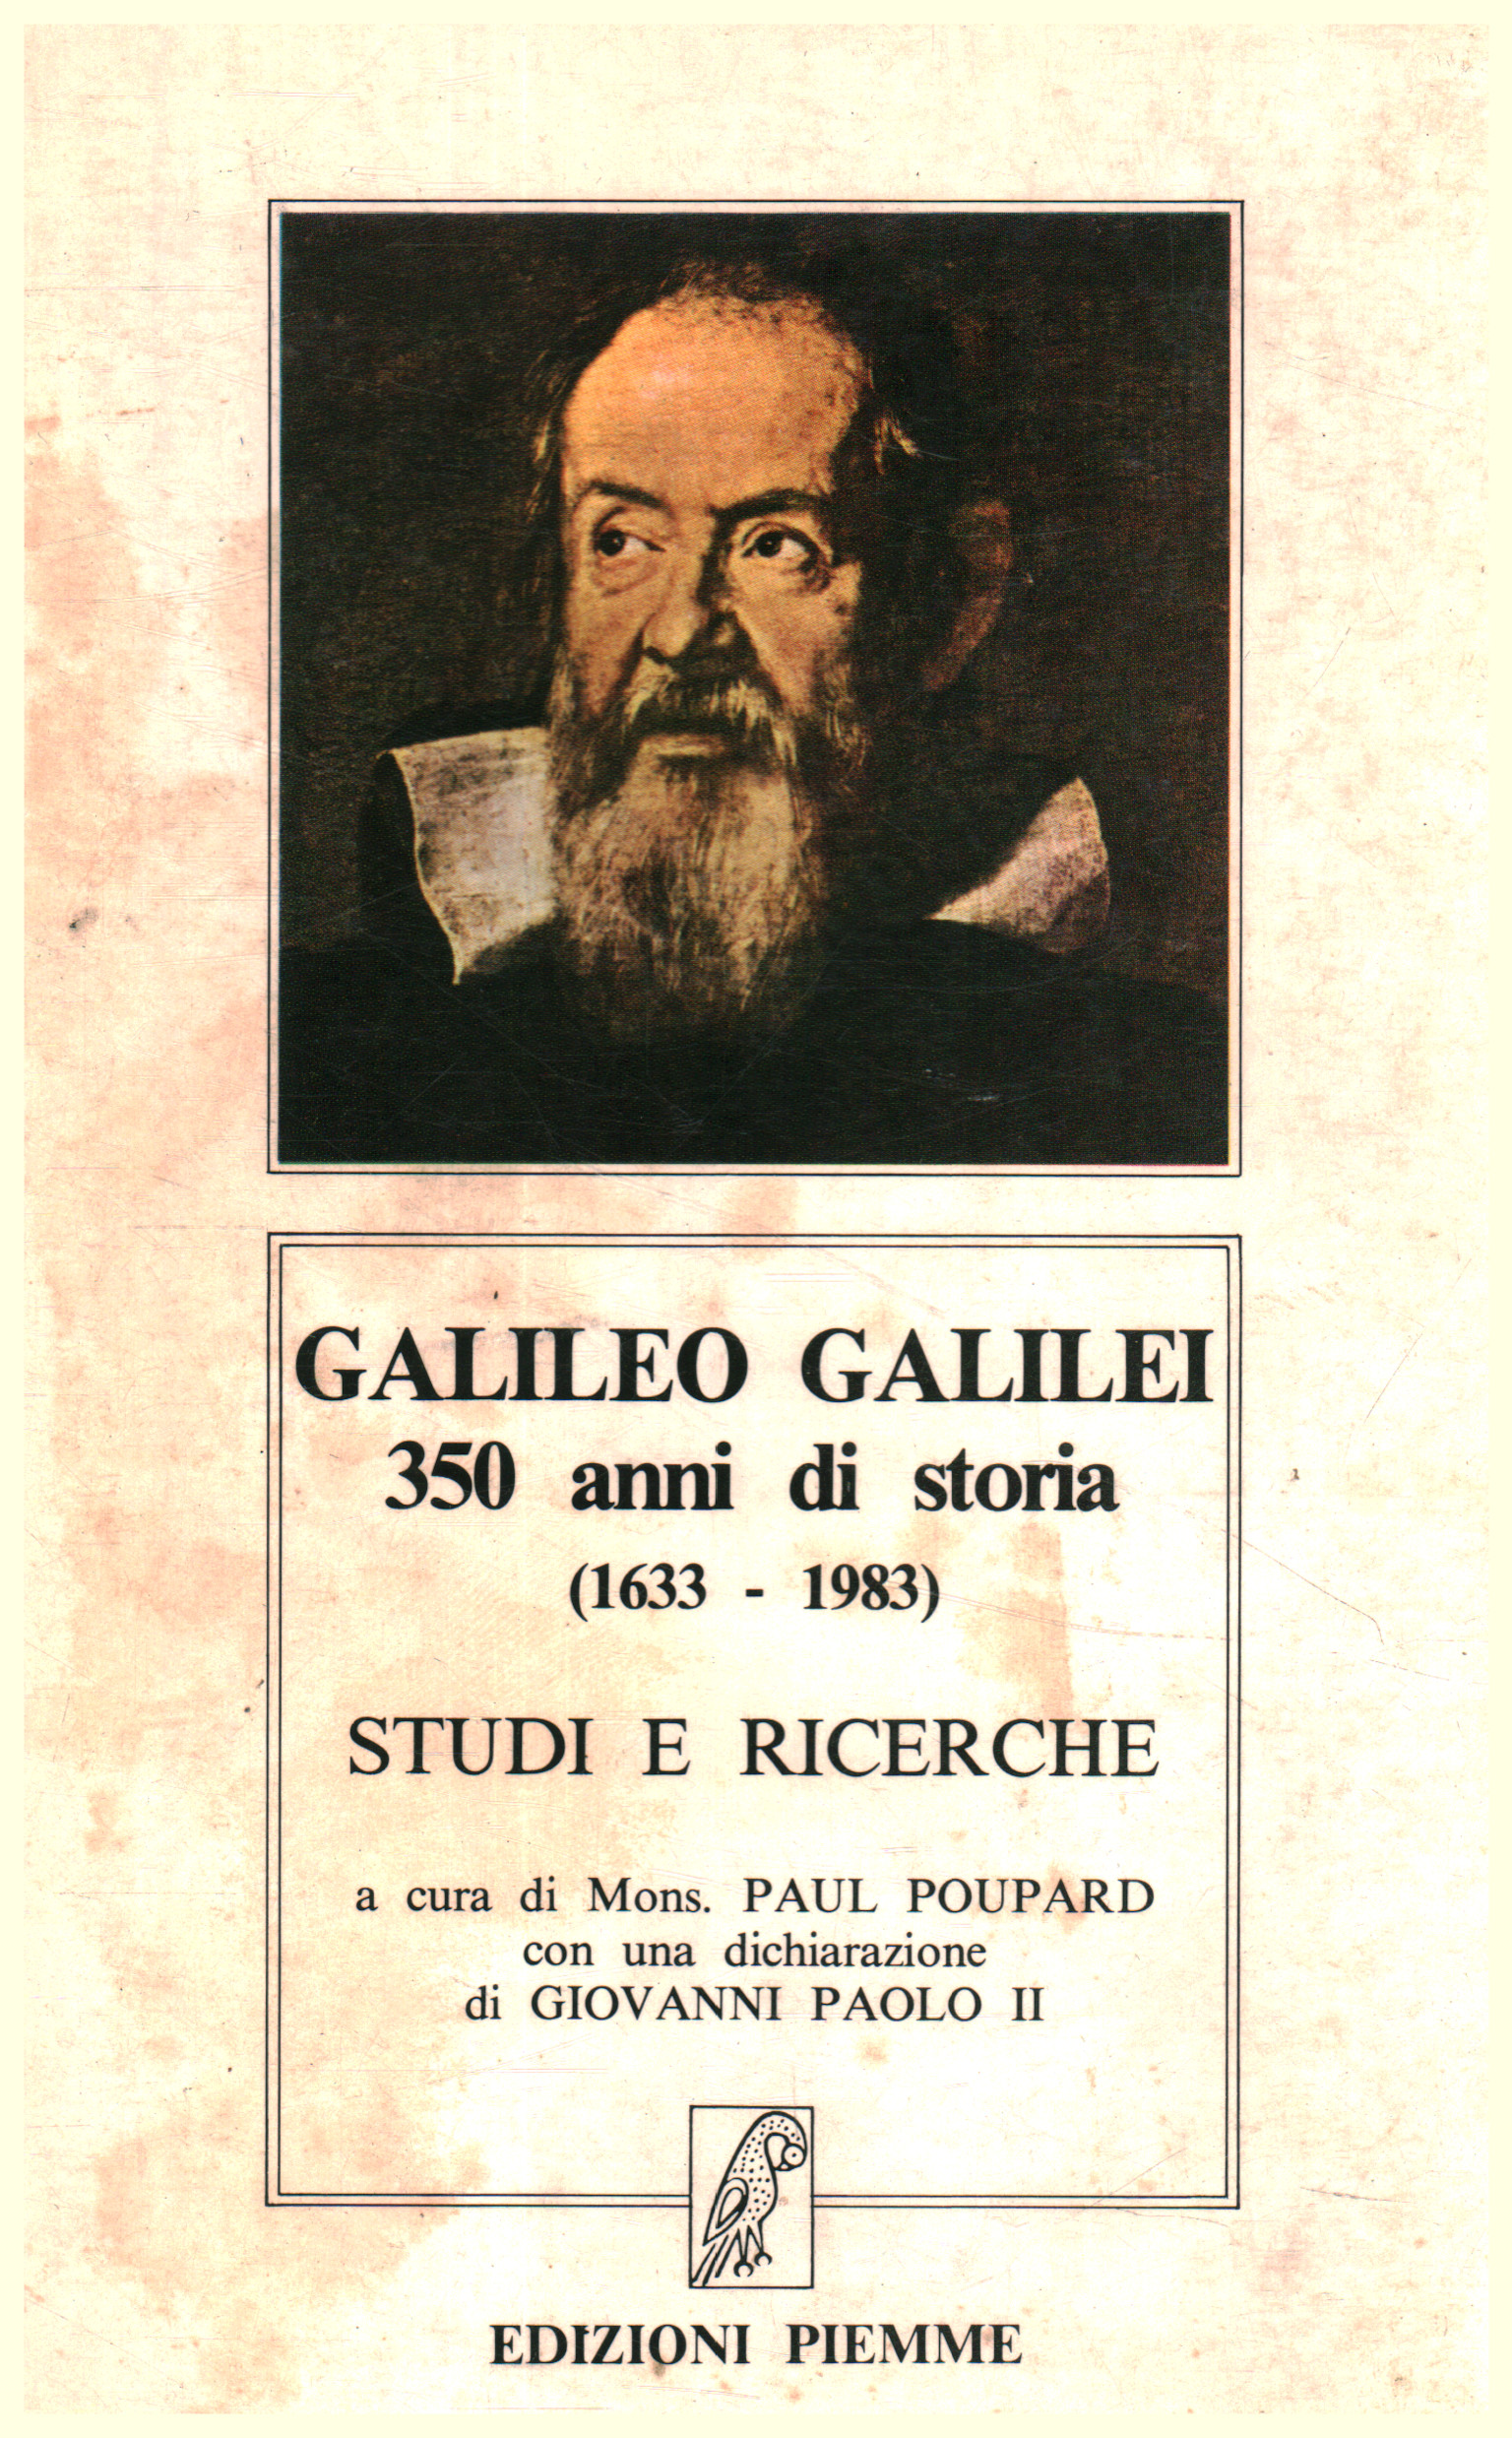 Galileo Galilei. 350 Jahre Geschichte (1